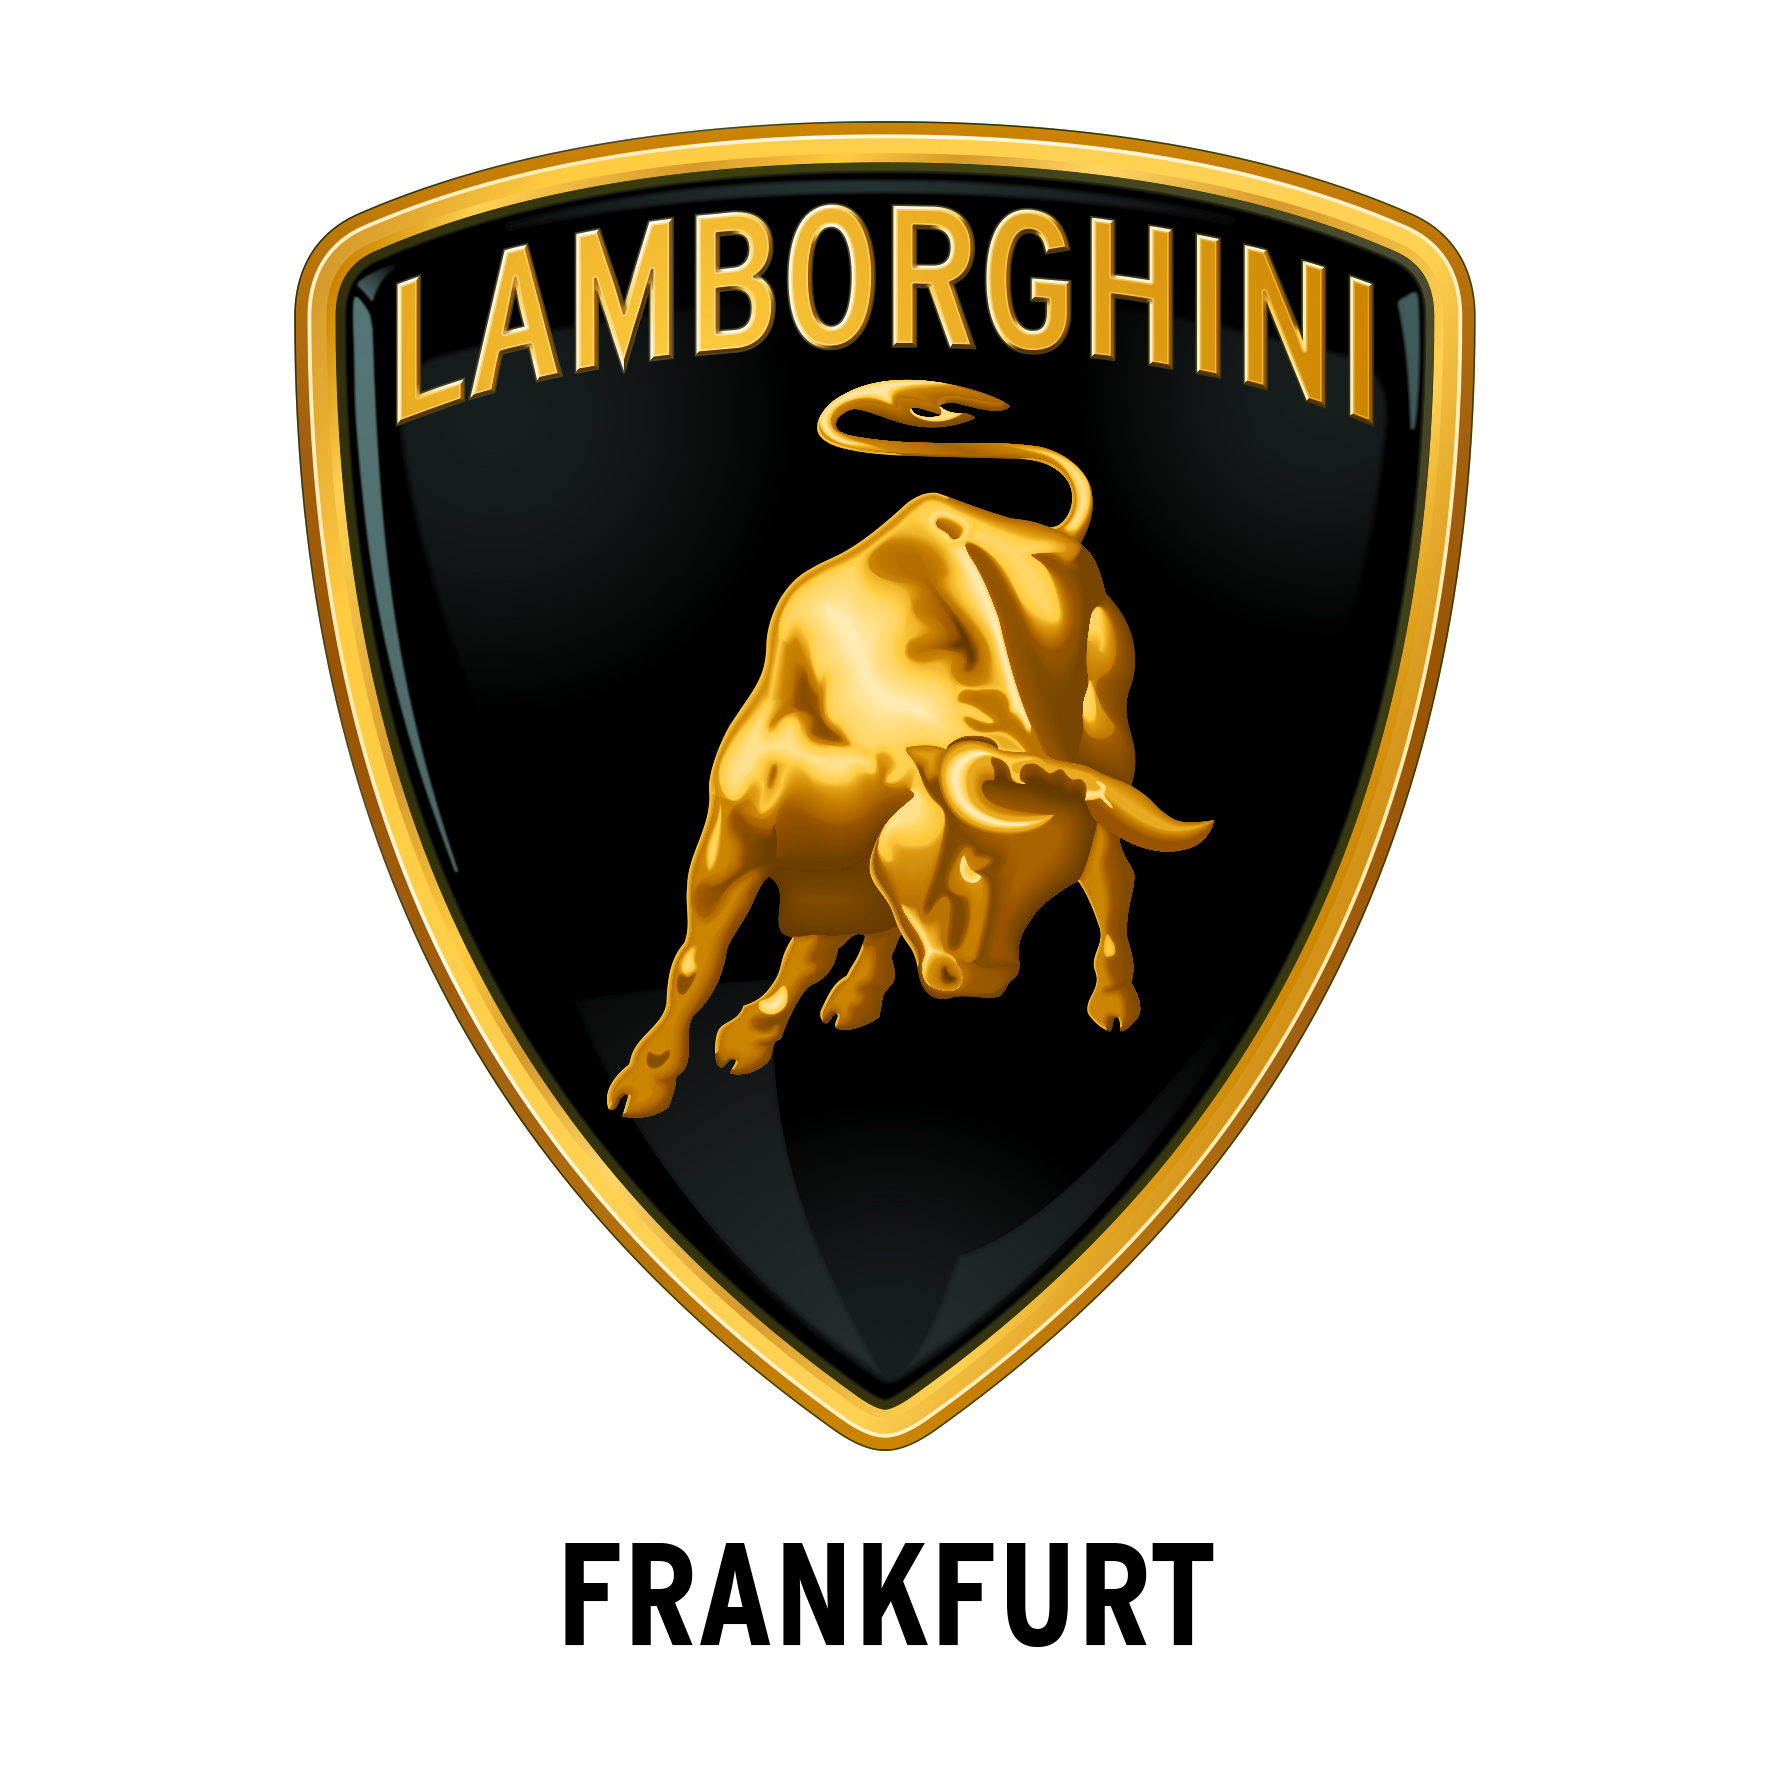 Lamborghini Frankfurt